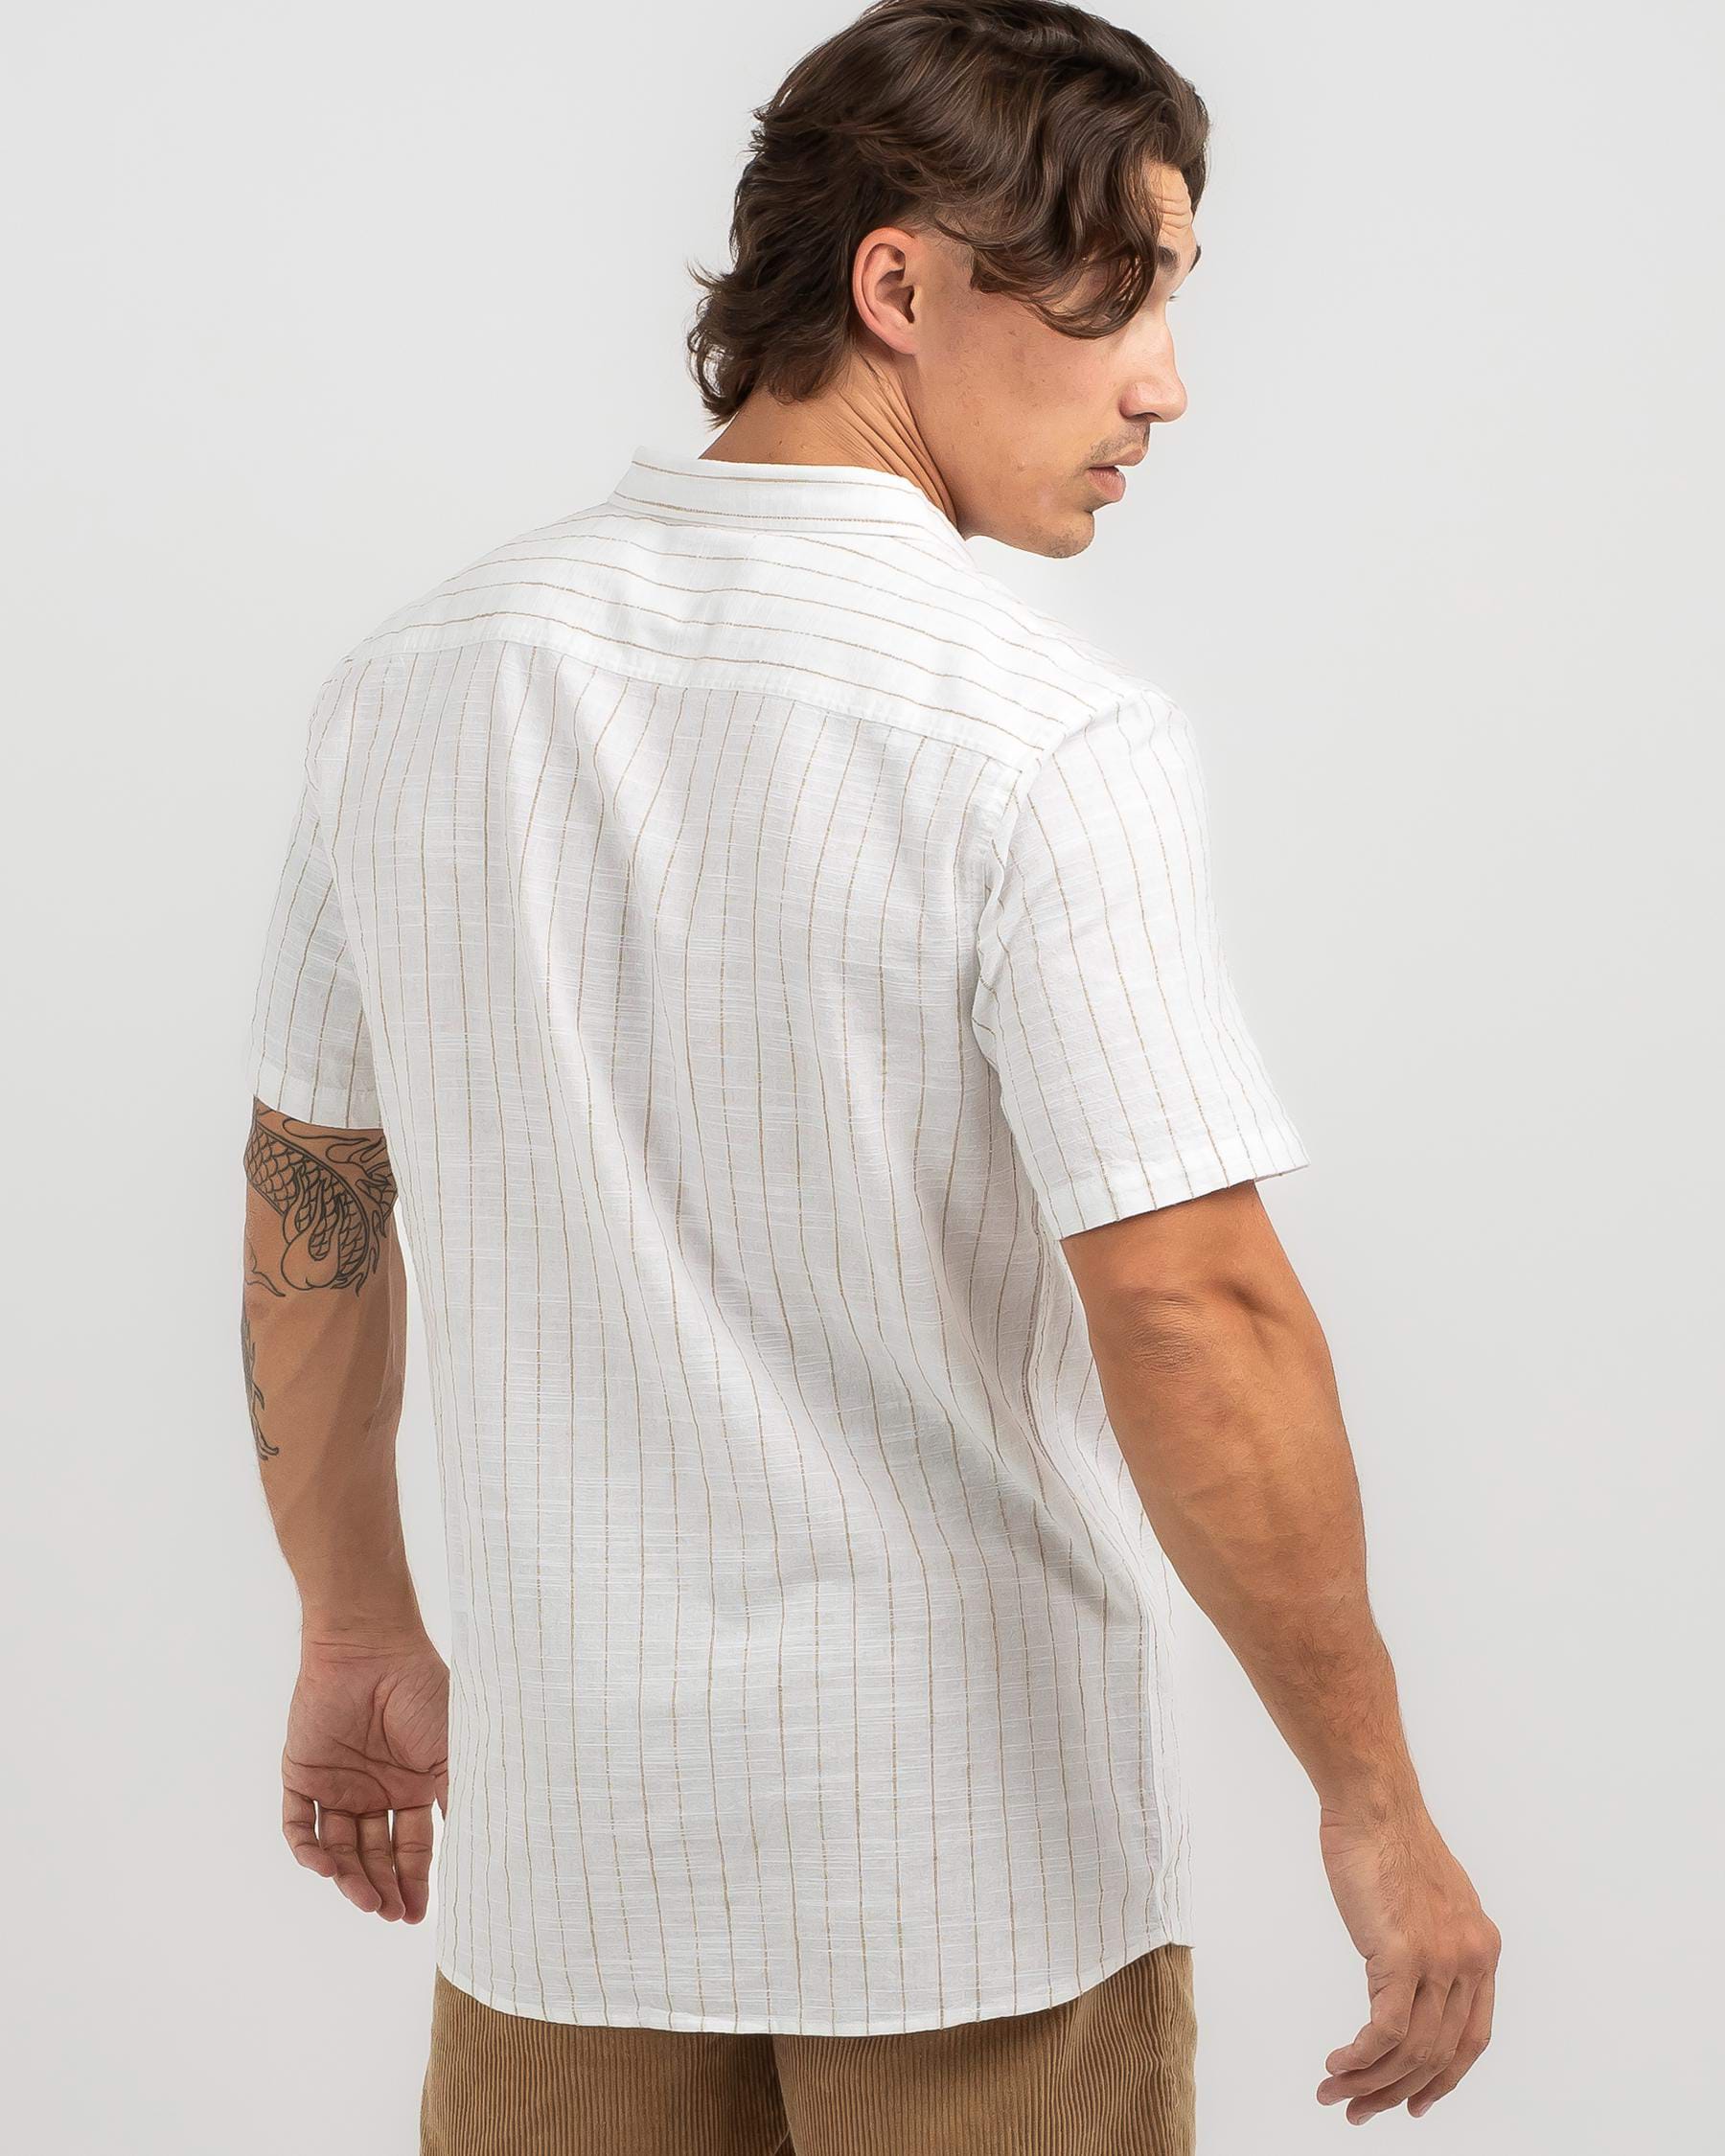 Skylark Relaxed Short Sleeve Shirt In Off White - Fast Shipping & Easy ...